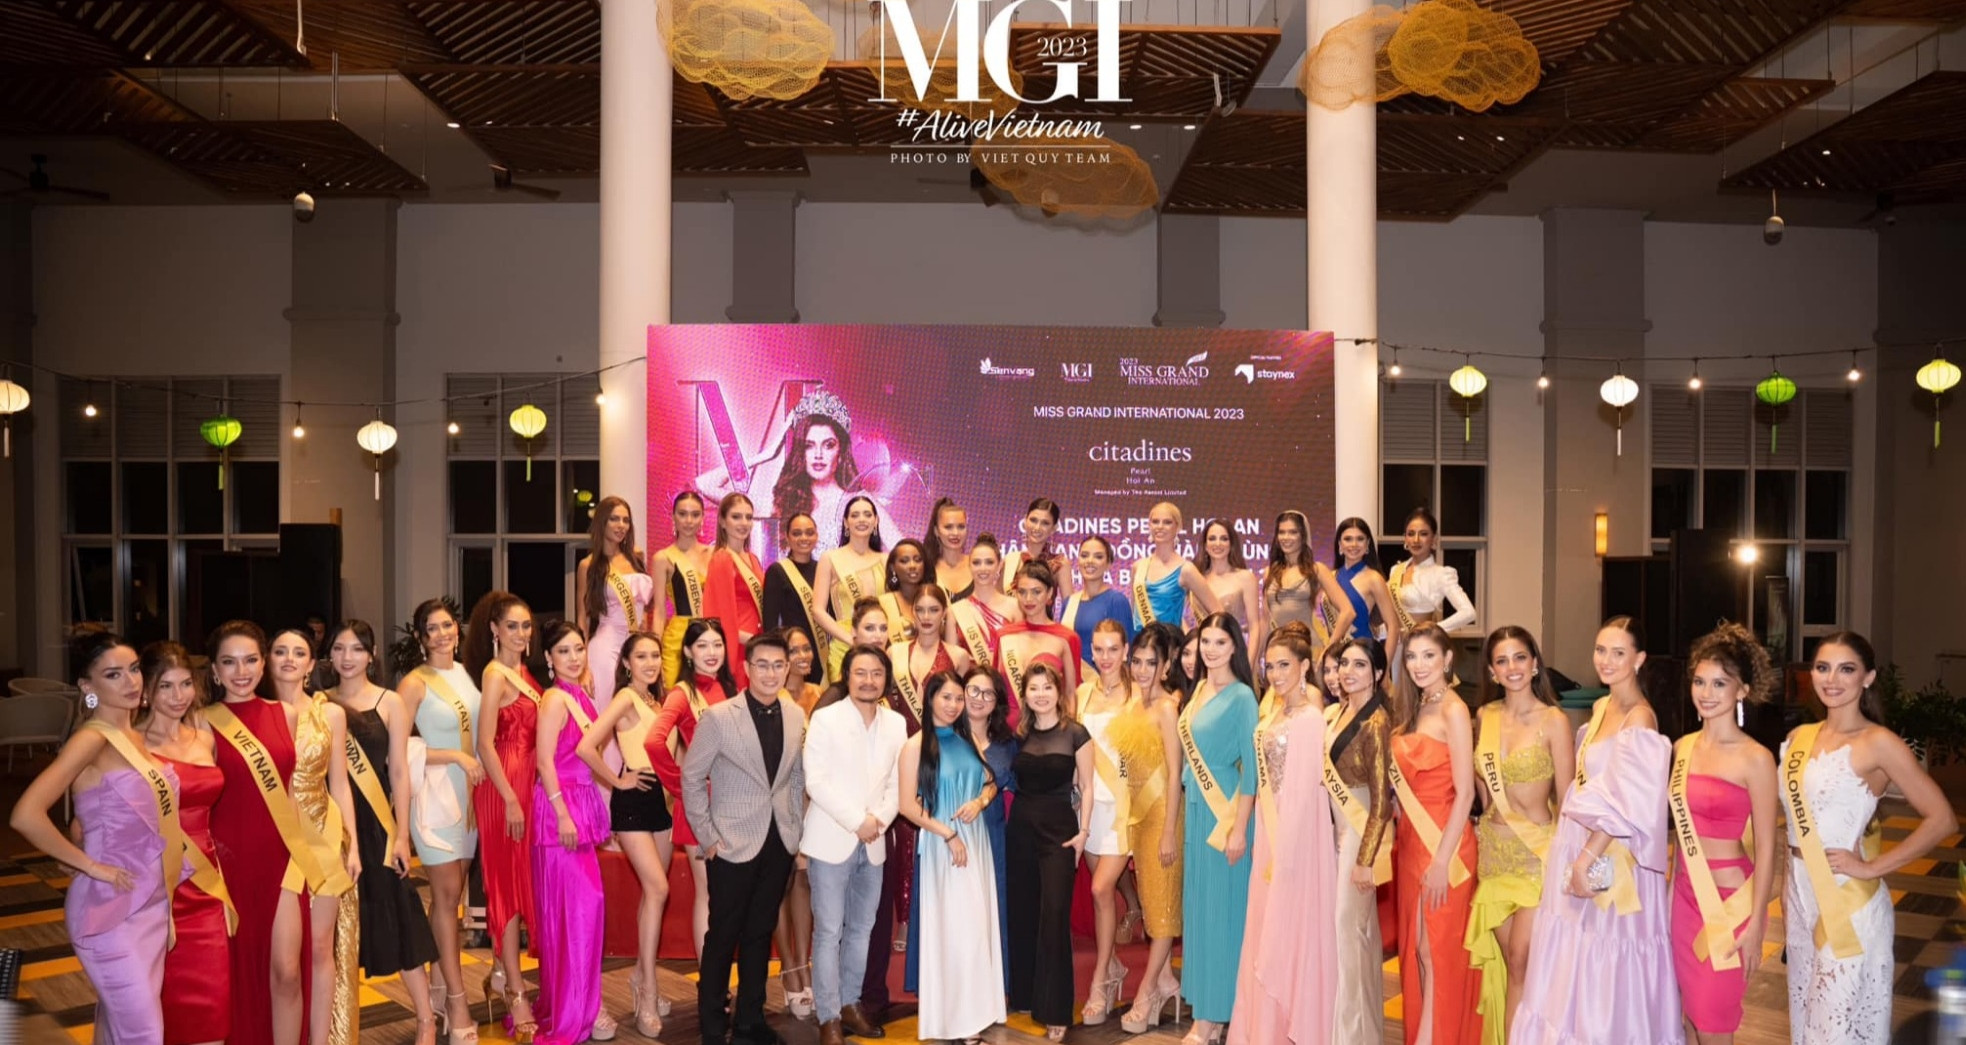 View - Khu nghỉ dưỡng ở Hội An chinh phục thí sinh Miss Grand International 2023